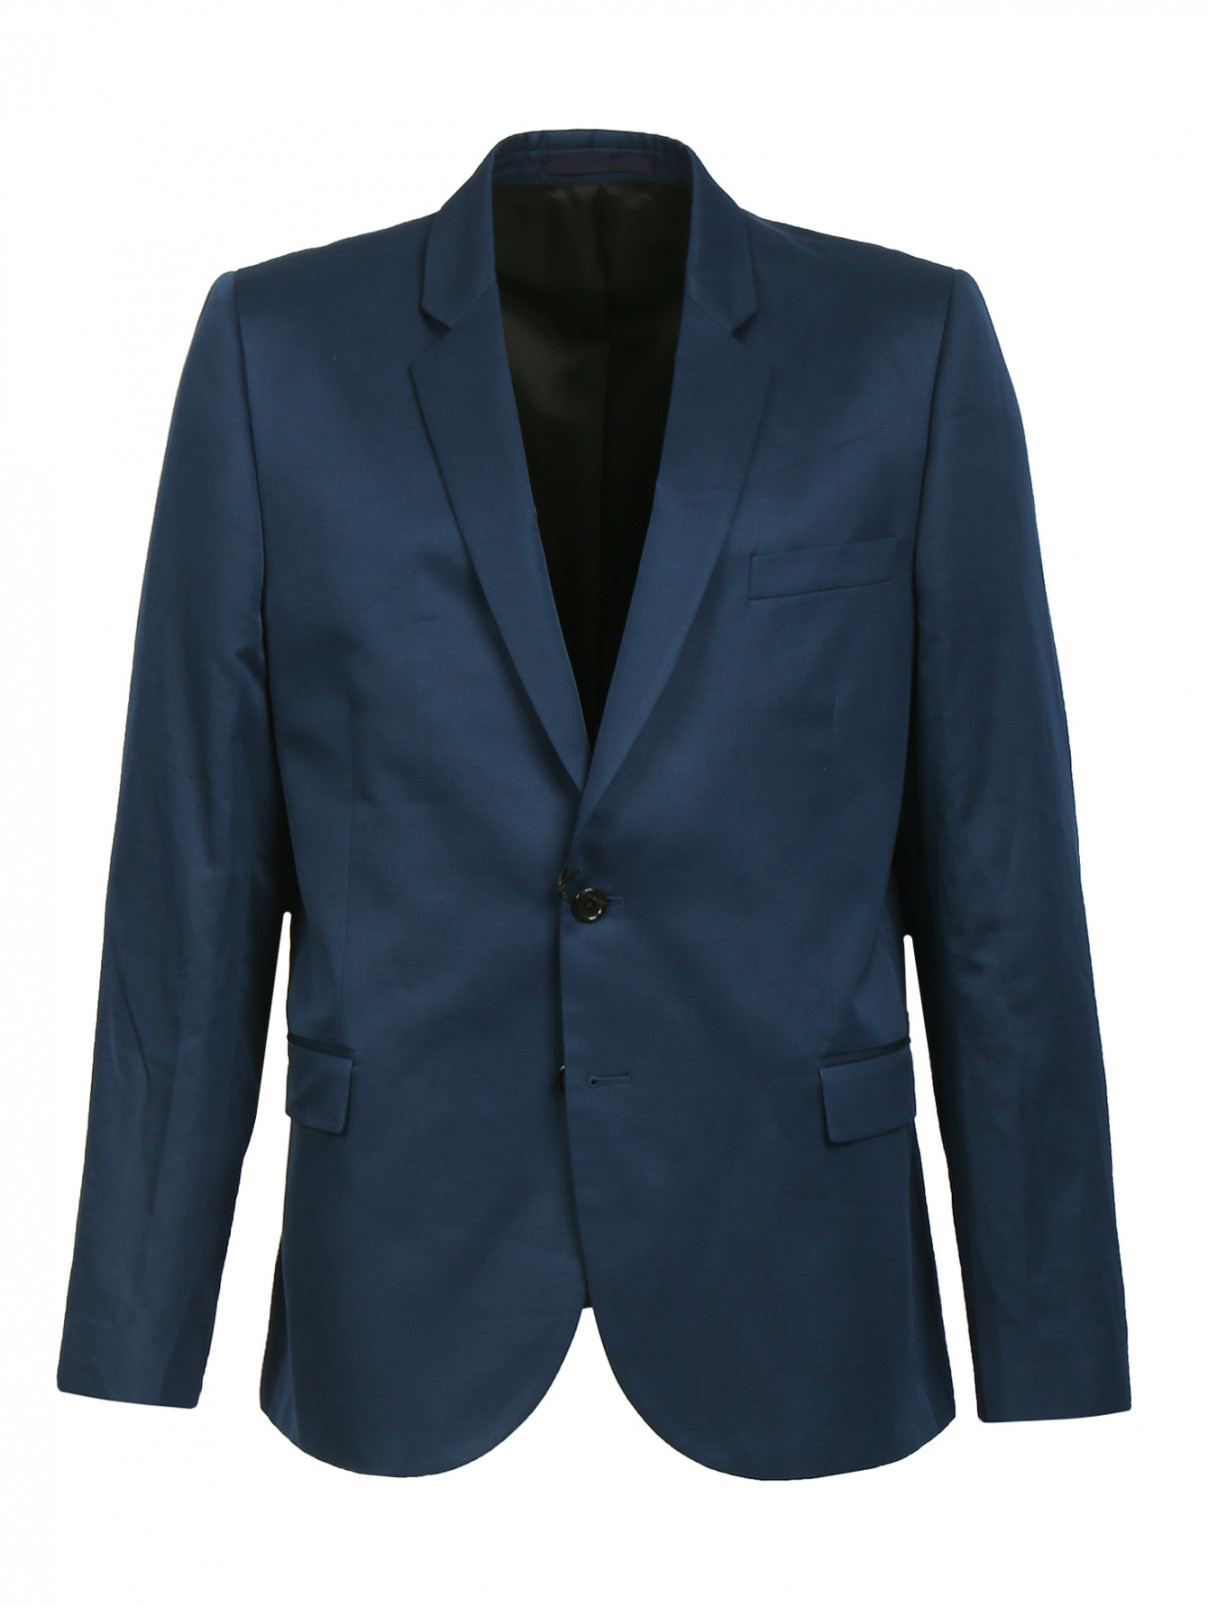 Однобортный пиджак из хлопка и льна Paul Smith  –  Общий вид  – Цвет:  Синий